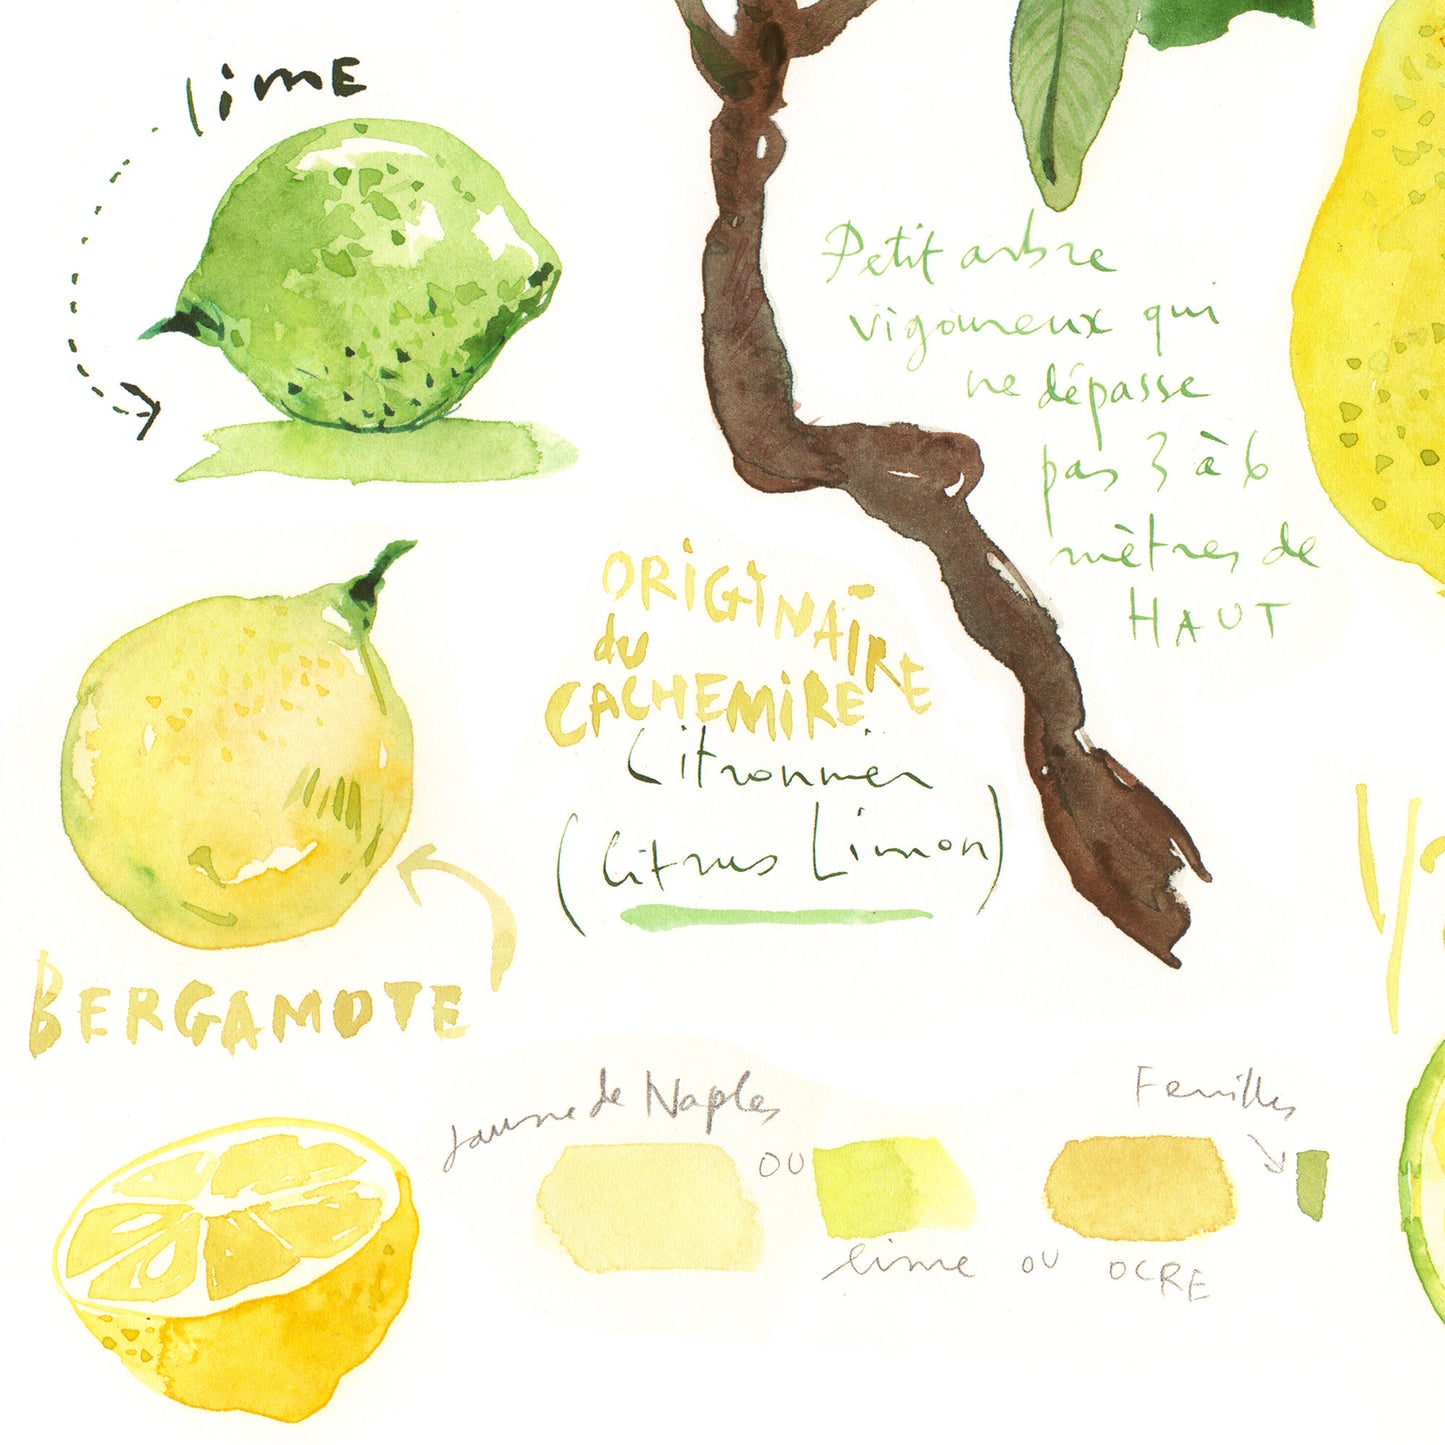 Lemon tree botanical illustration